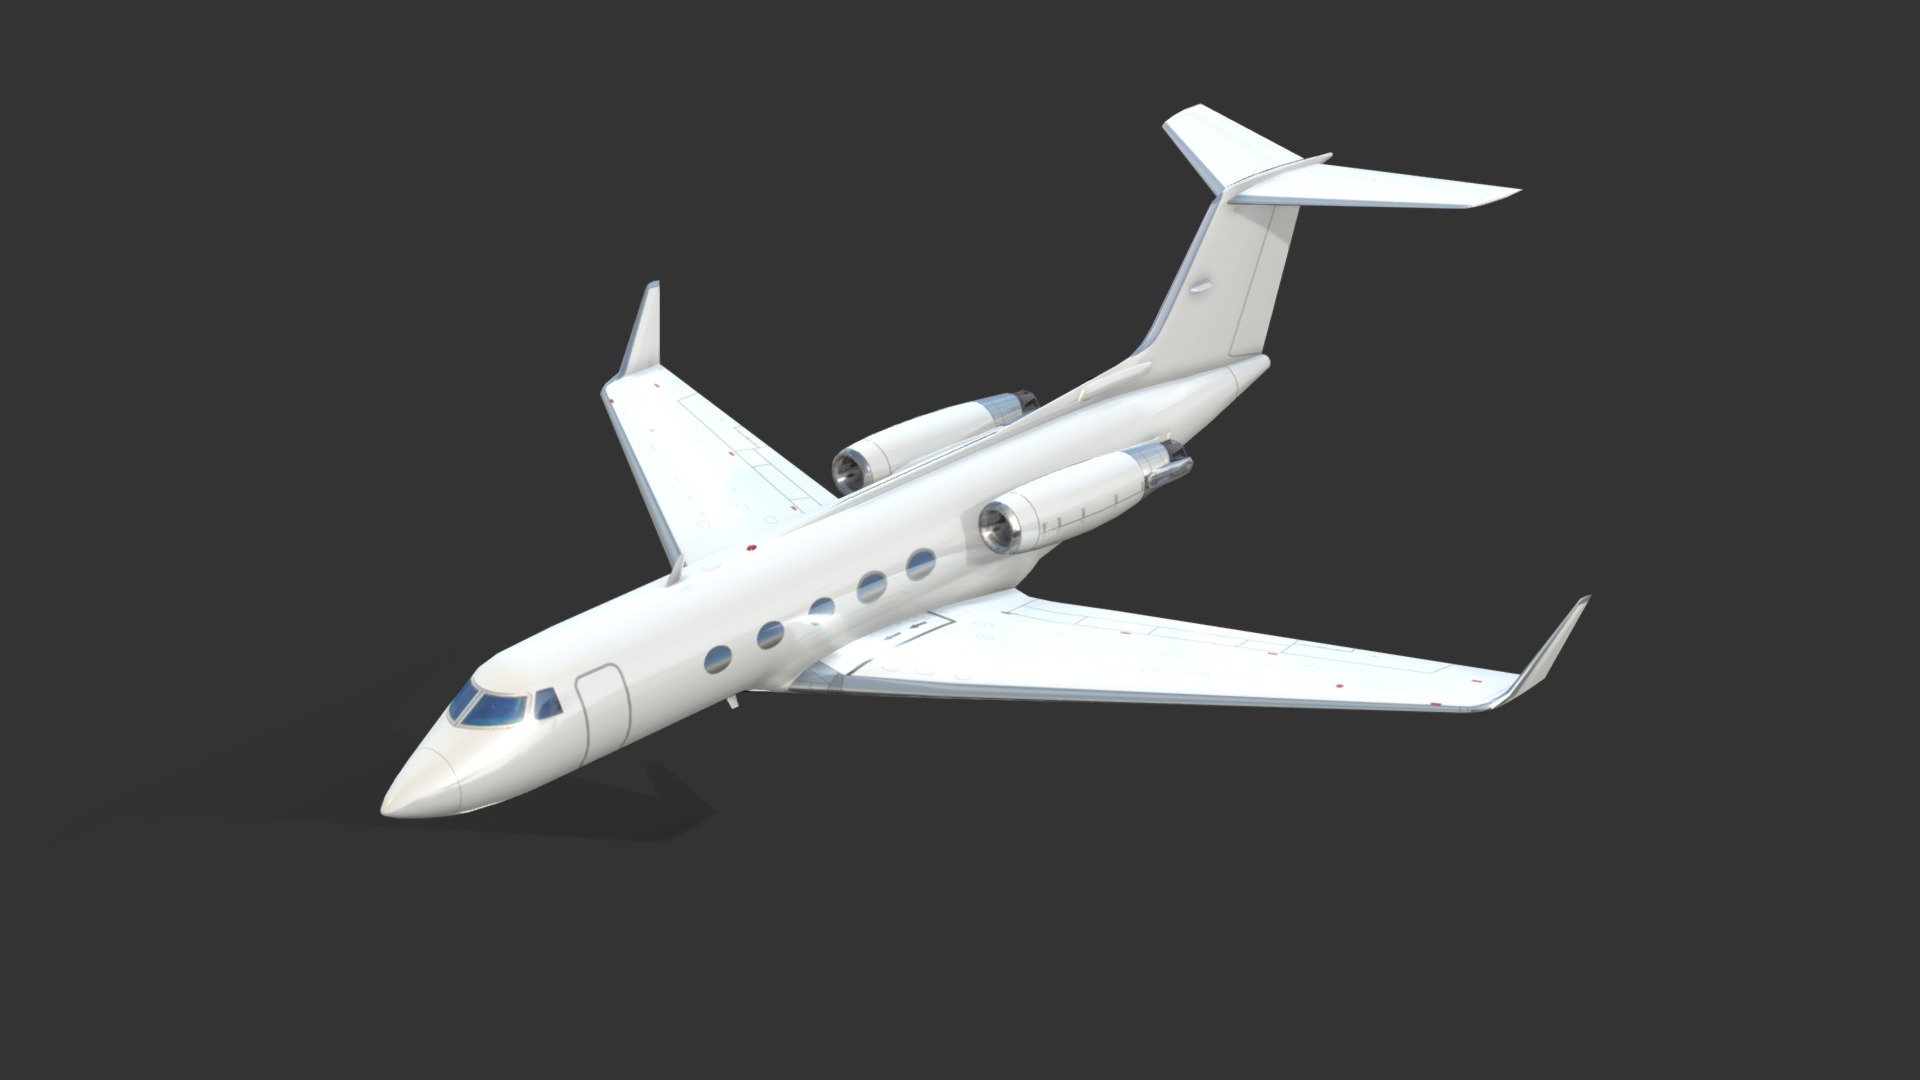 Gulfstream III - Gulfstream III - Buy Royalty Free 3D model by Andrea Marziano (@3dartel) 3d model